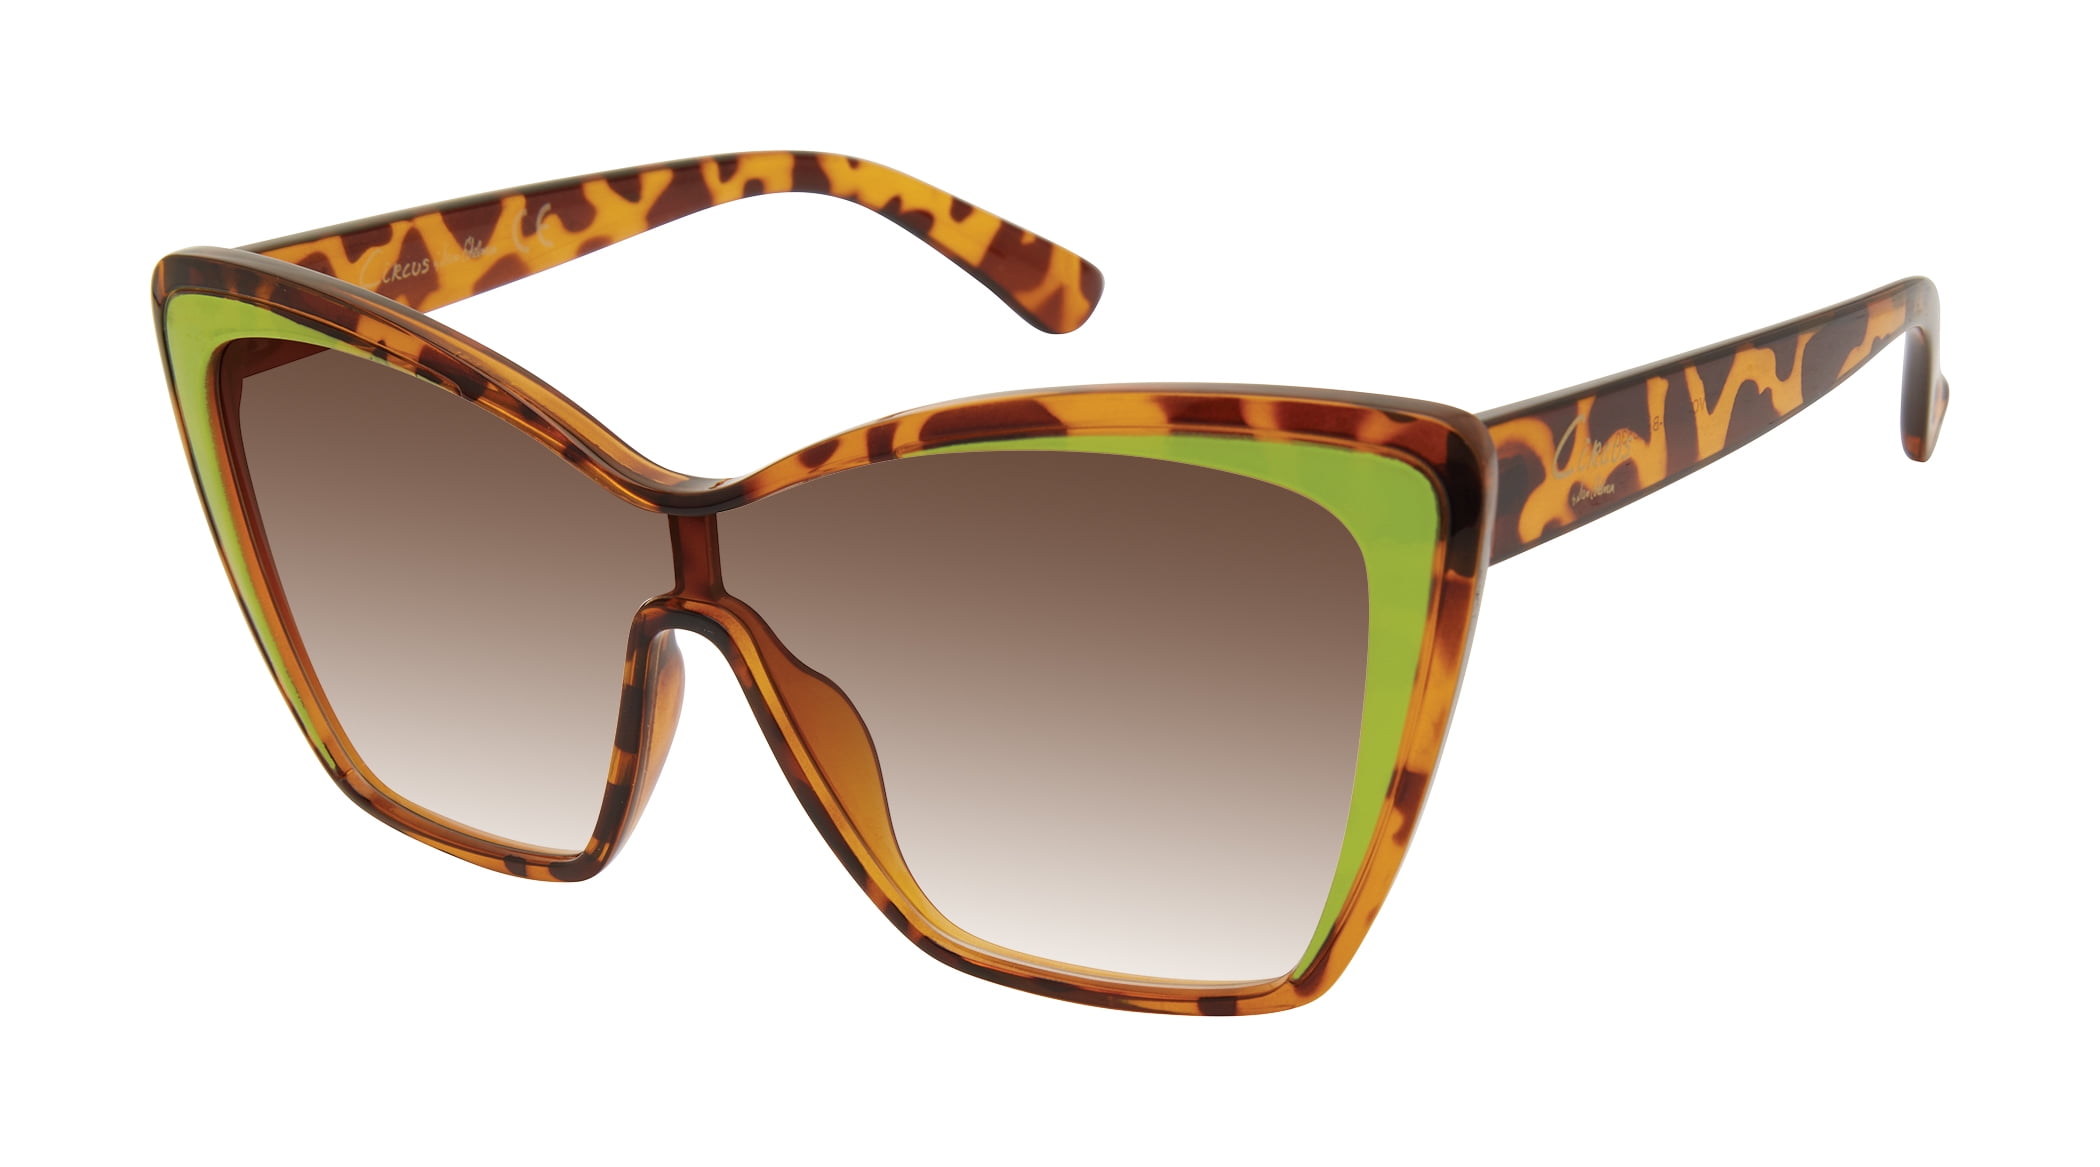 Dolce & Gabbana 4403 Sunglasses